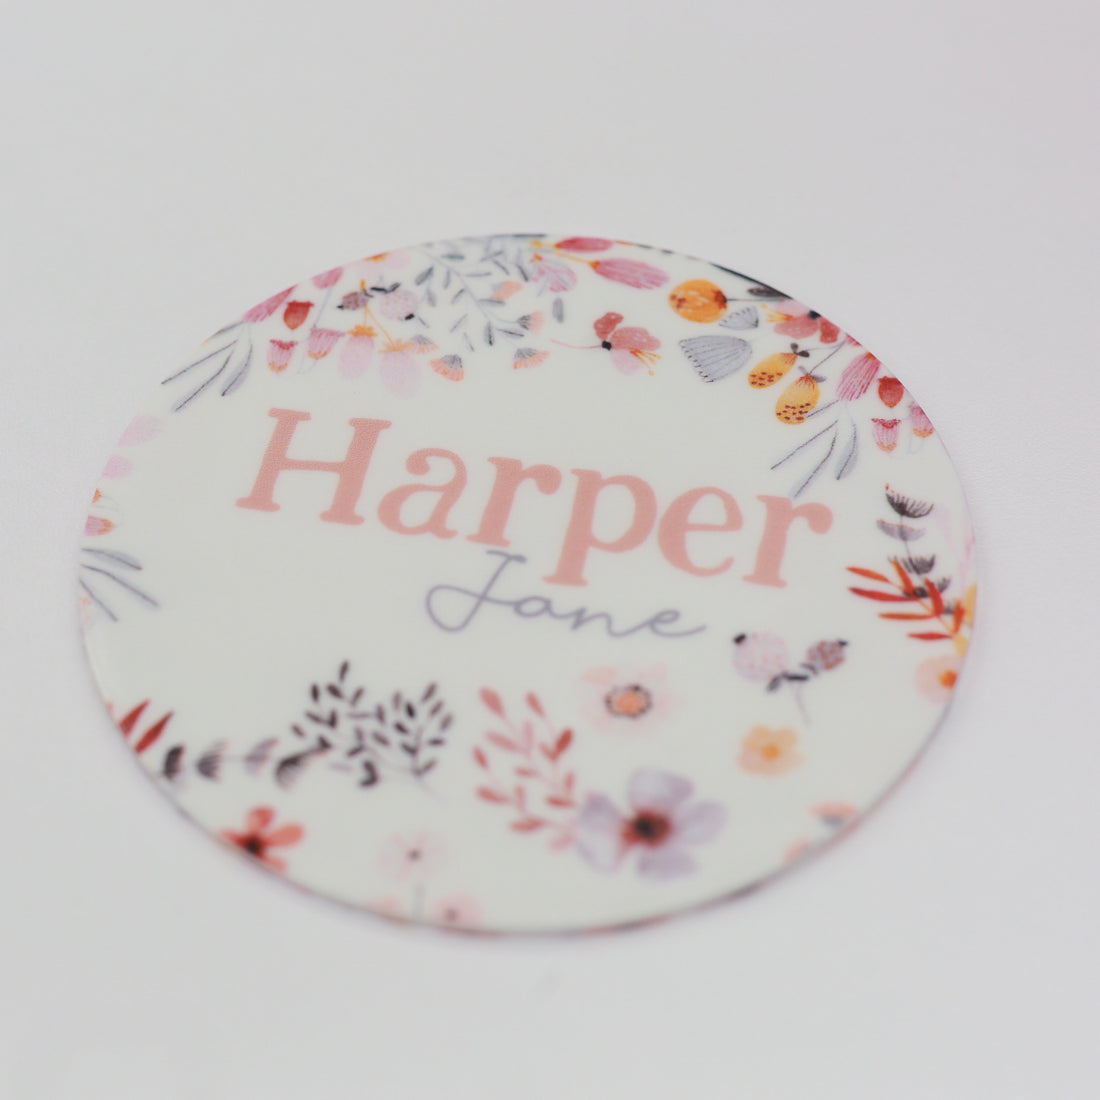 Harper Jane Round Announcement Disk